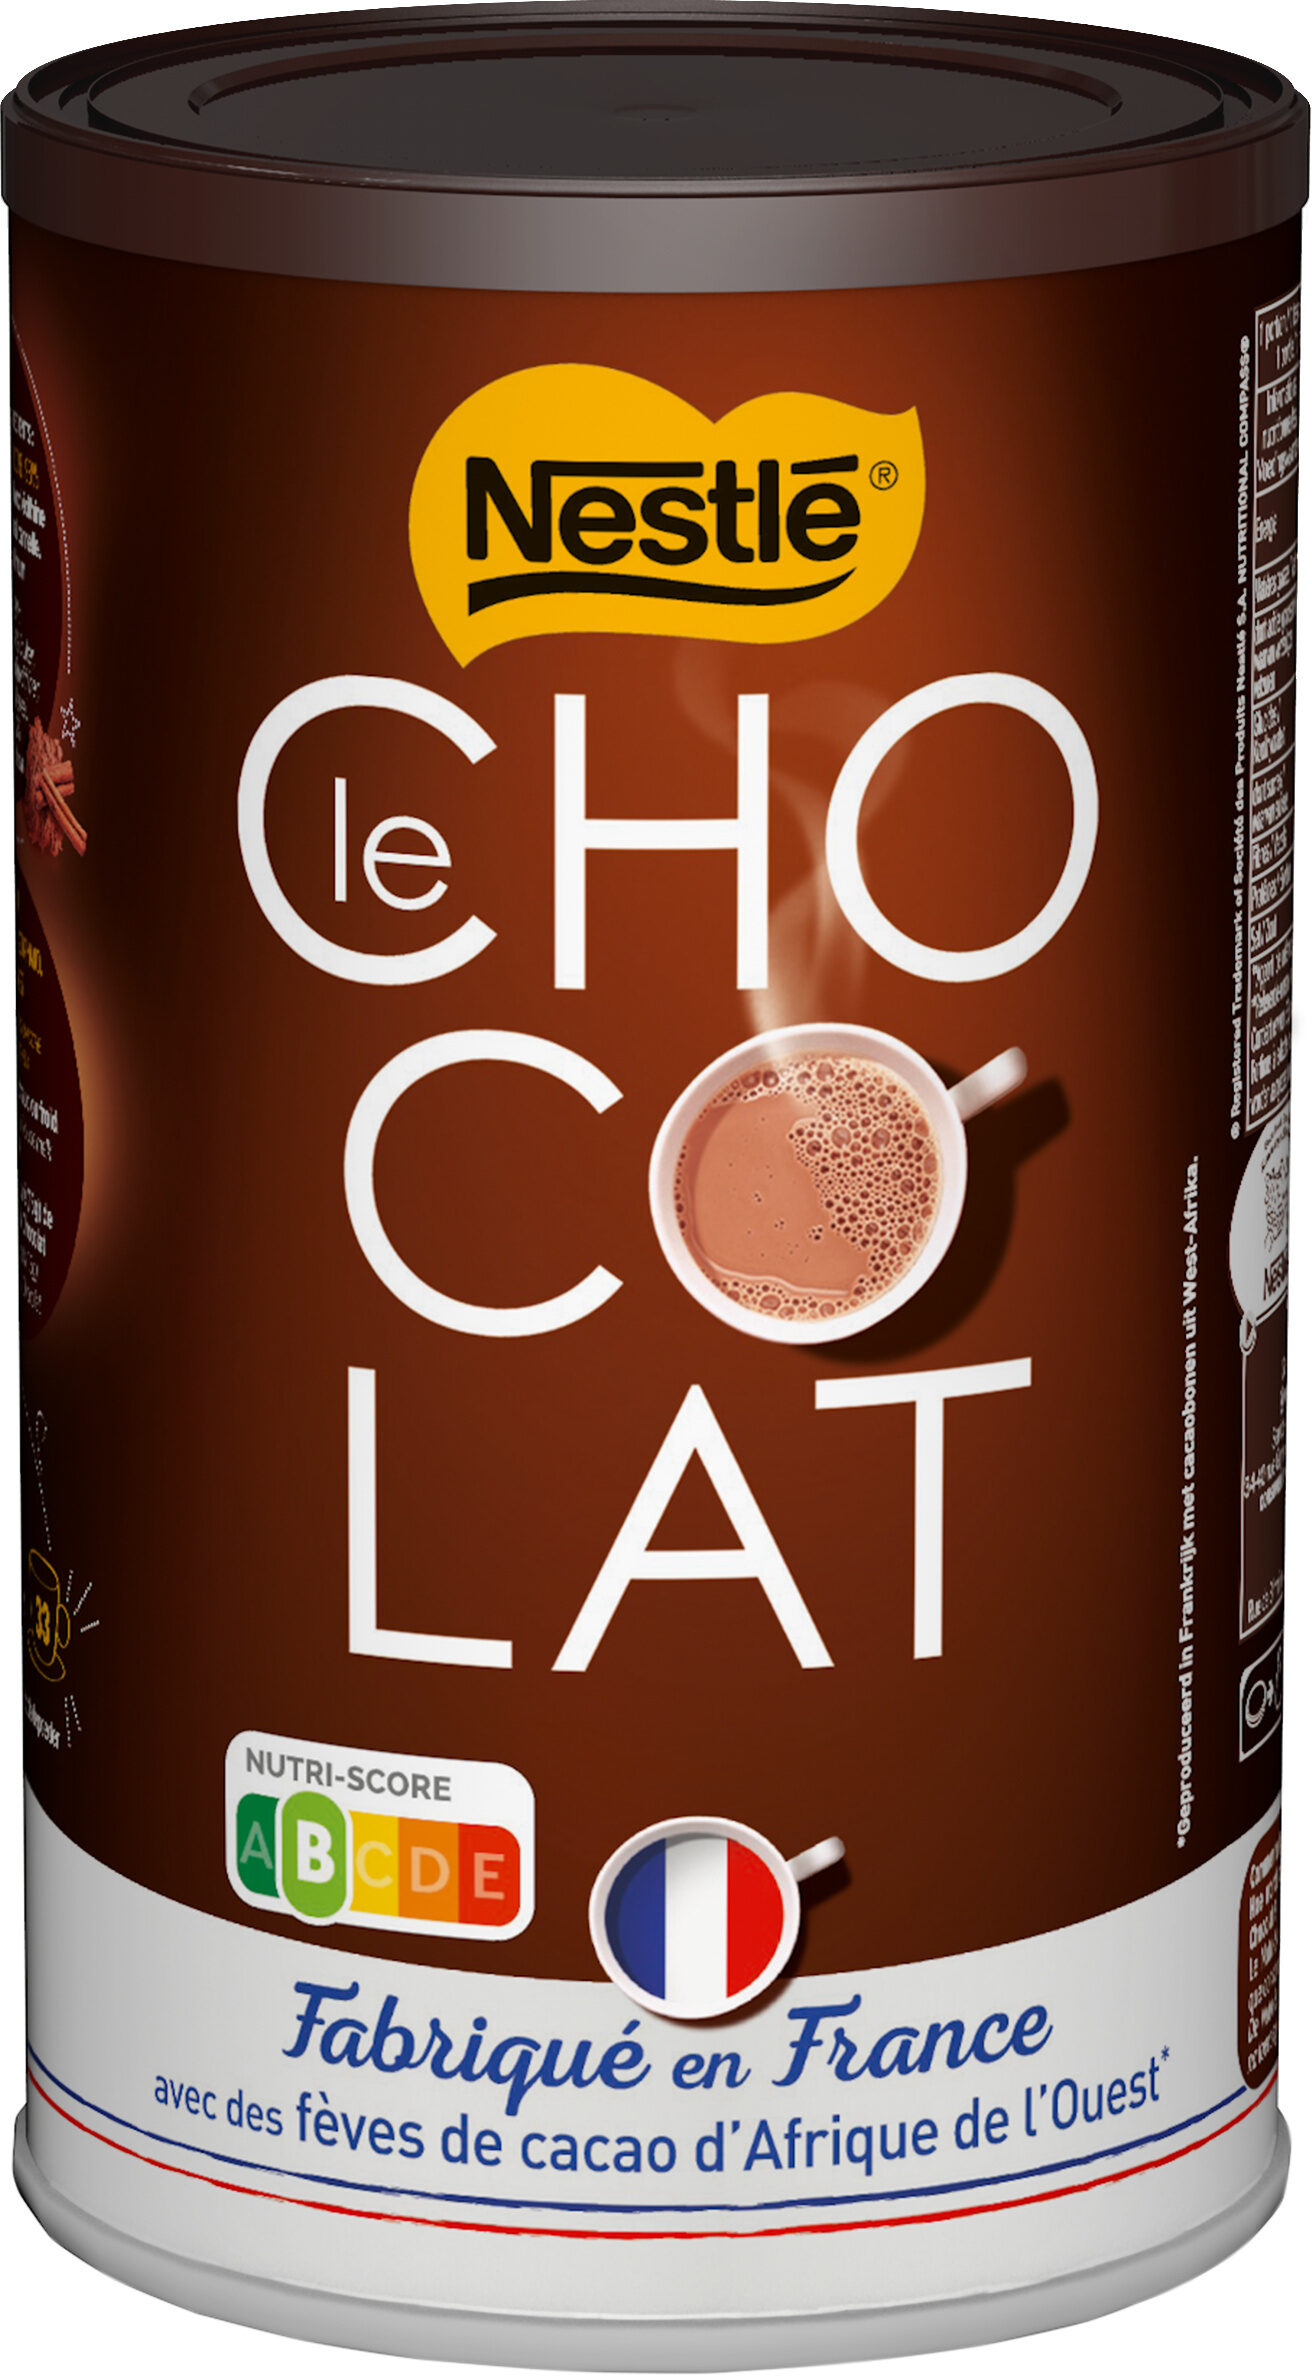 NESTLE Le chocolat, poudre chocolatée, boîte 500g - Product - fr